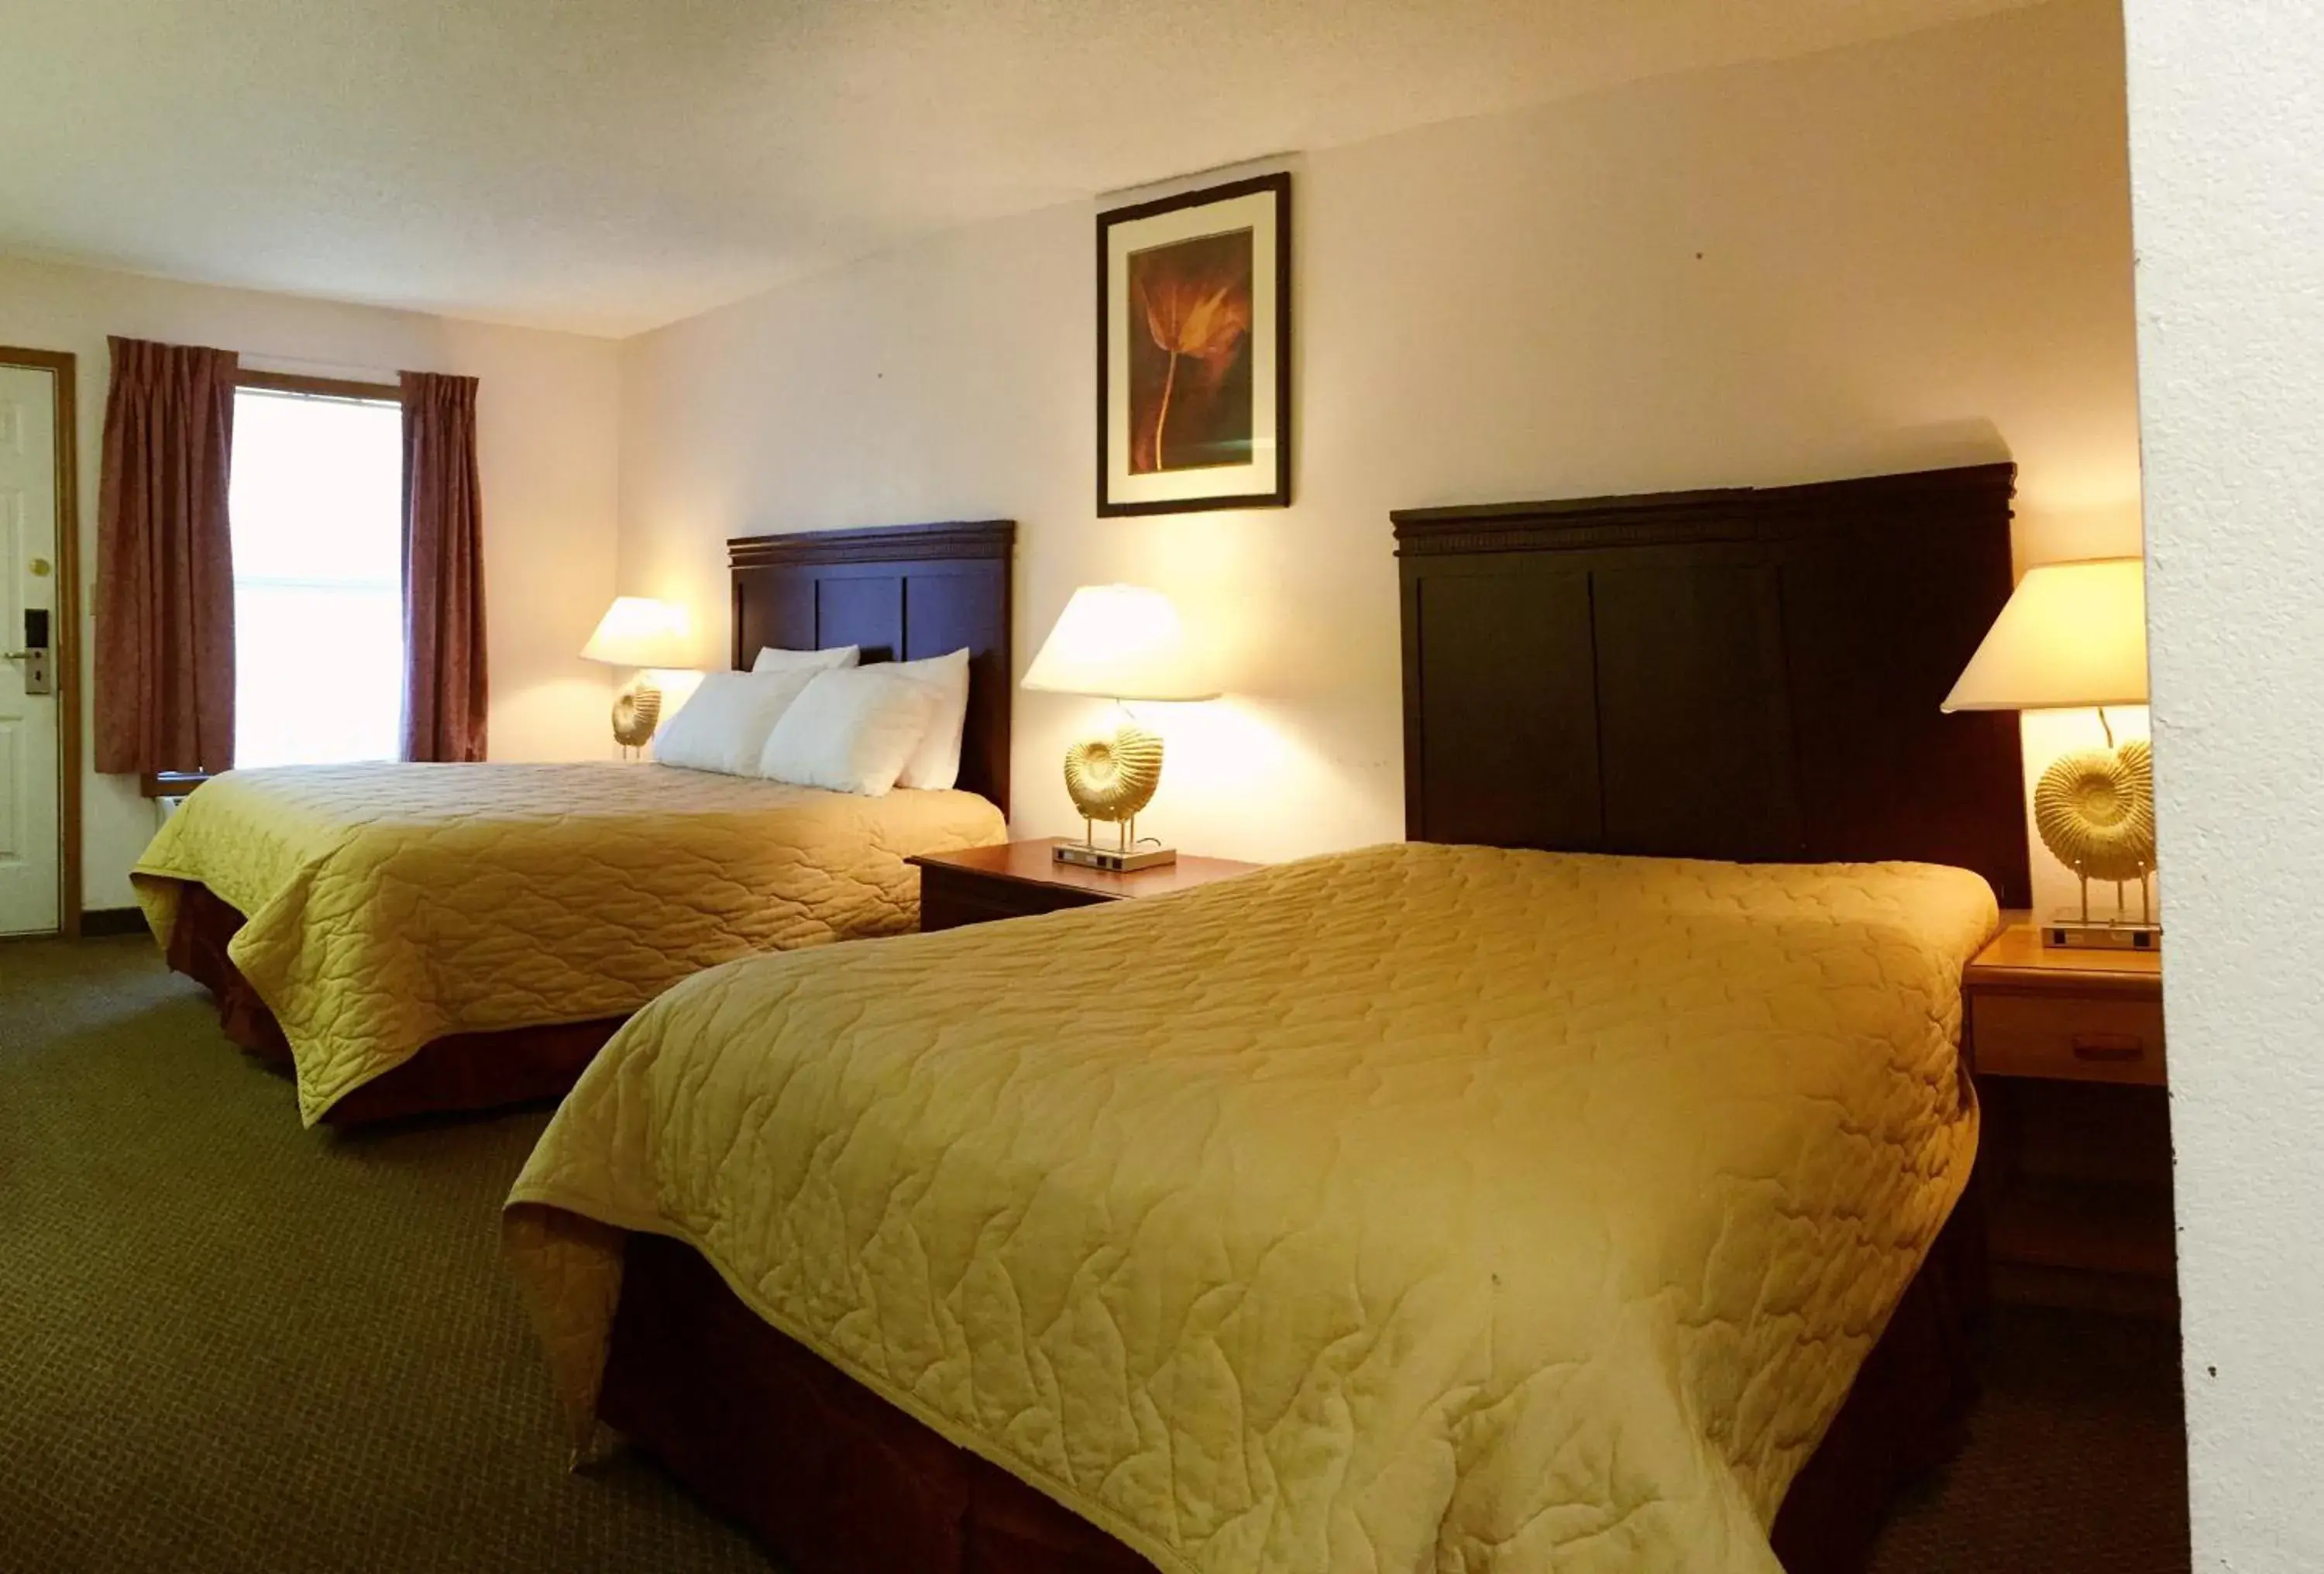 Bedroom, Room Photo in HOTEL DEL SOL - Pensacola